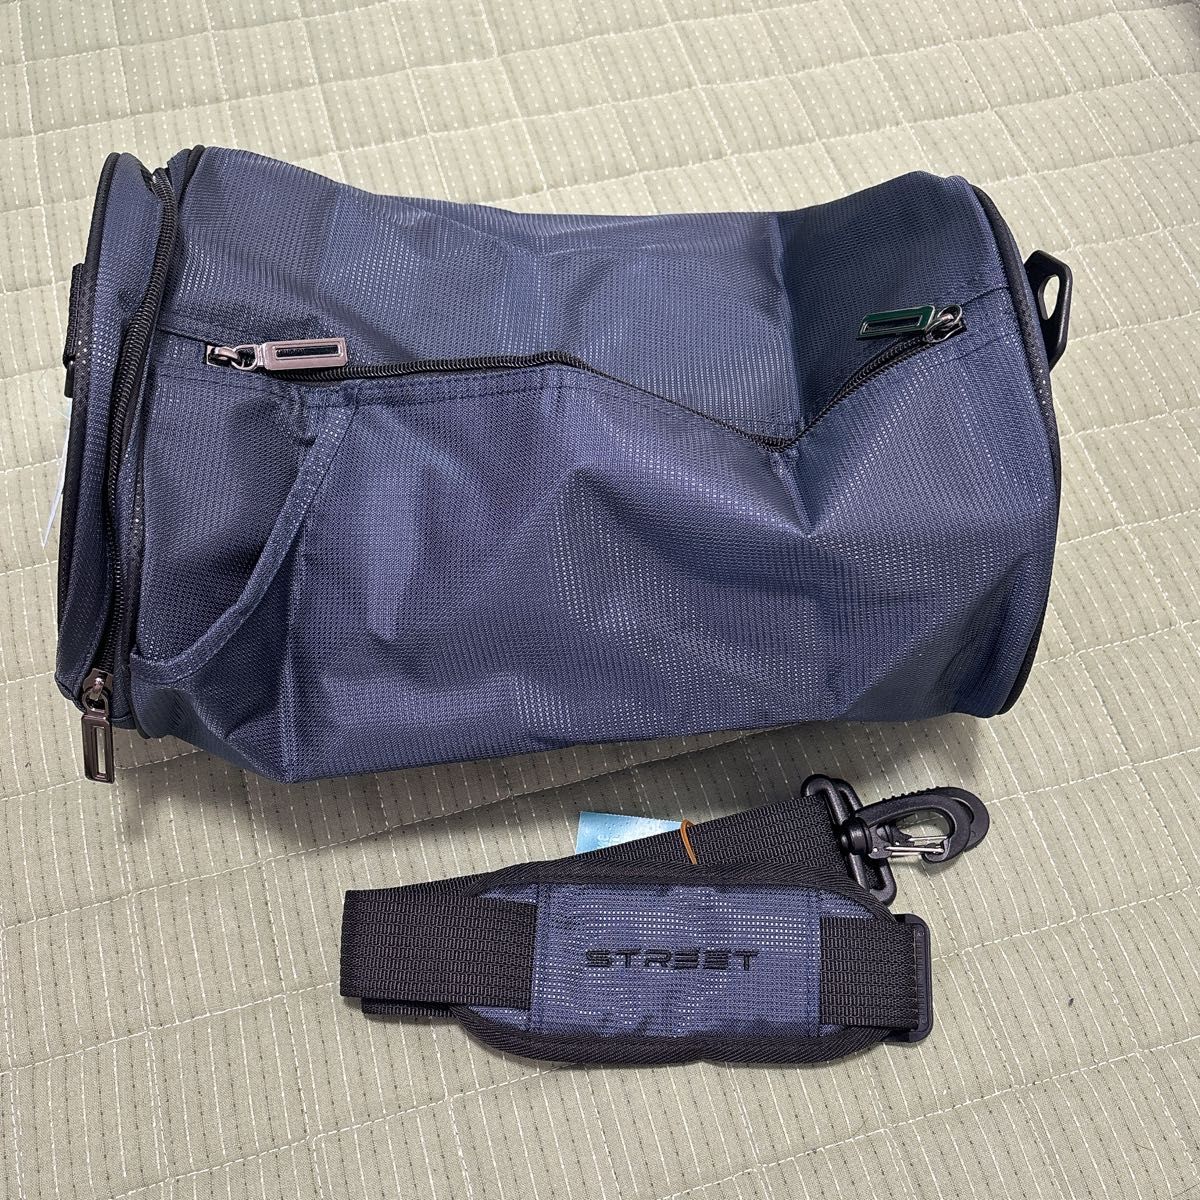 新品・未使用品メンズジムバッグ 大容量 軽量 防水 多機能 Sサイズ ショルダーバッグ バッグ ショルダー